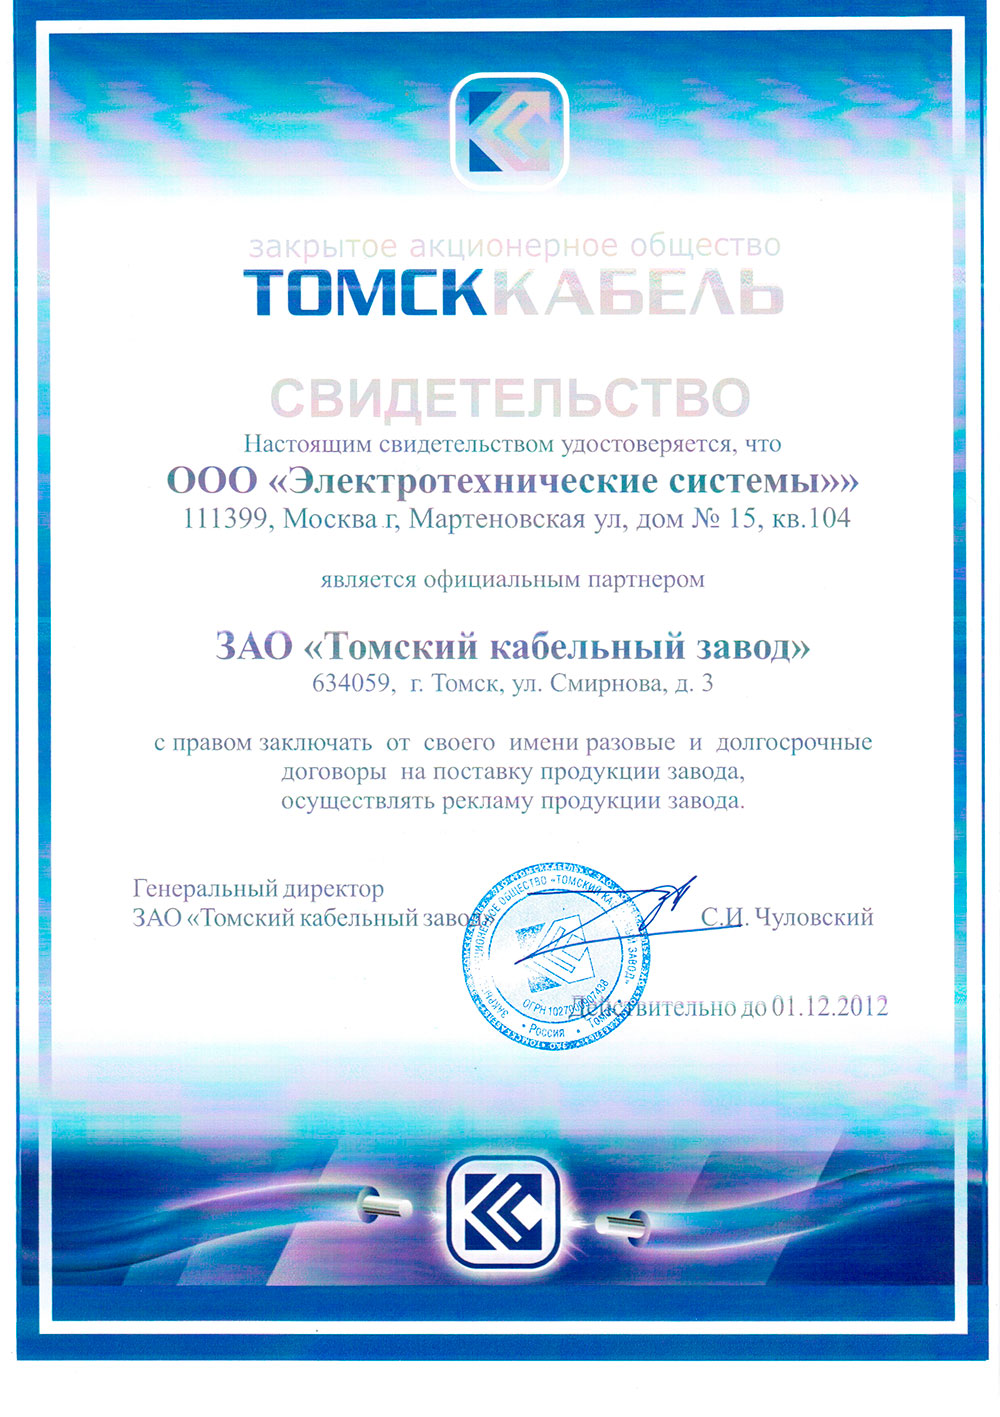 Компания ООО "Электротехнические Системы" получила статус официального партнера ЗАО "Томский кабельный завод"